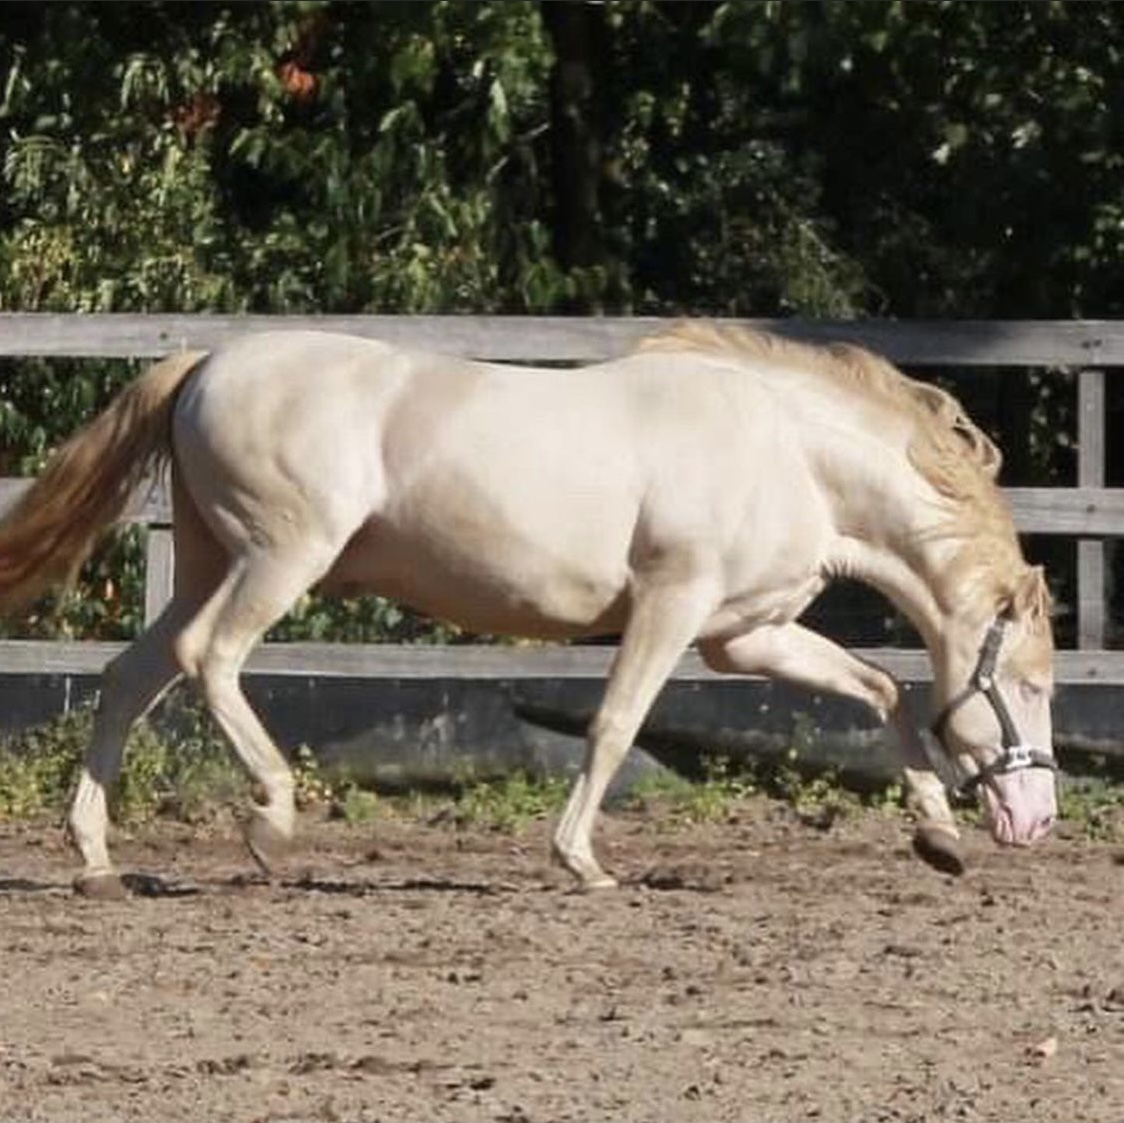 perlino vs cremello horse color